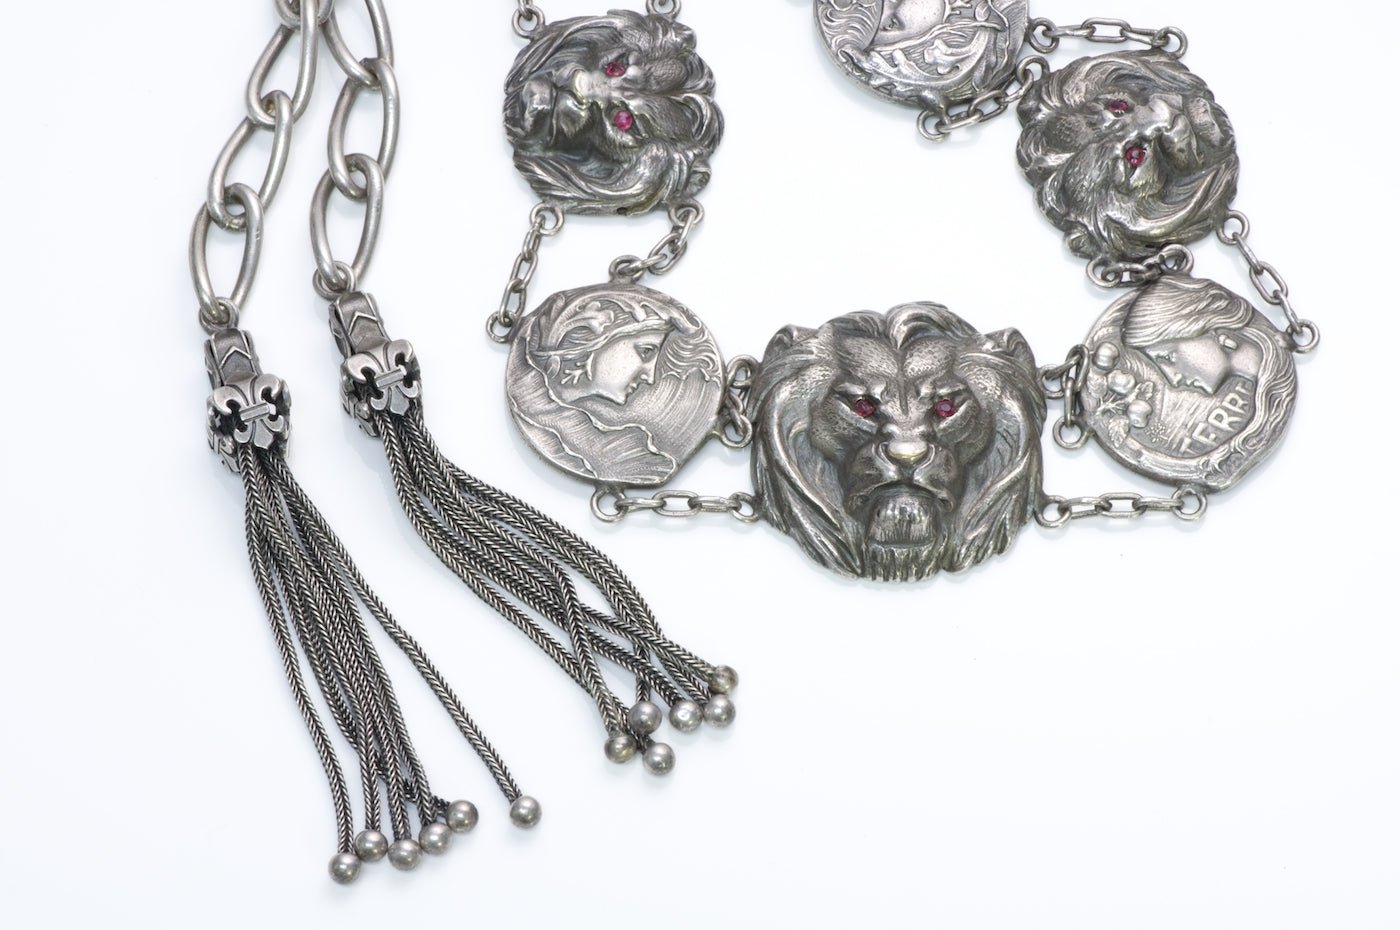 Art Nouveau Silver Lion Tassle Belt